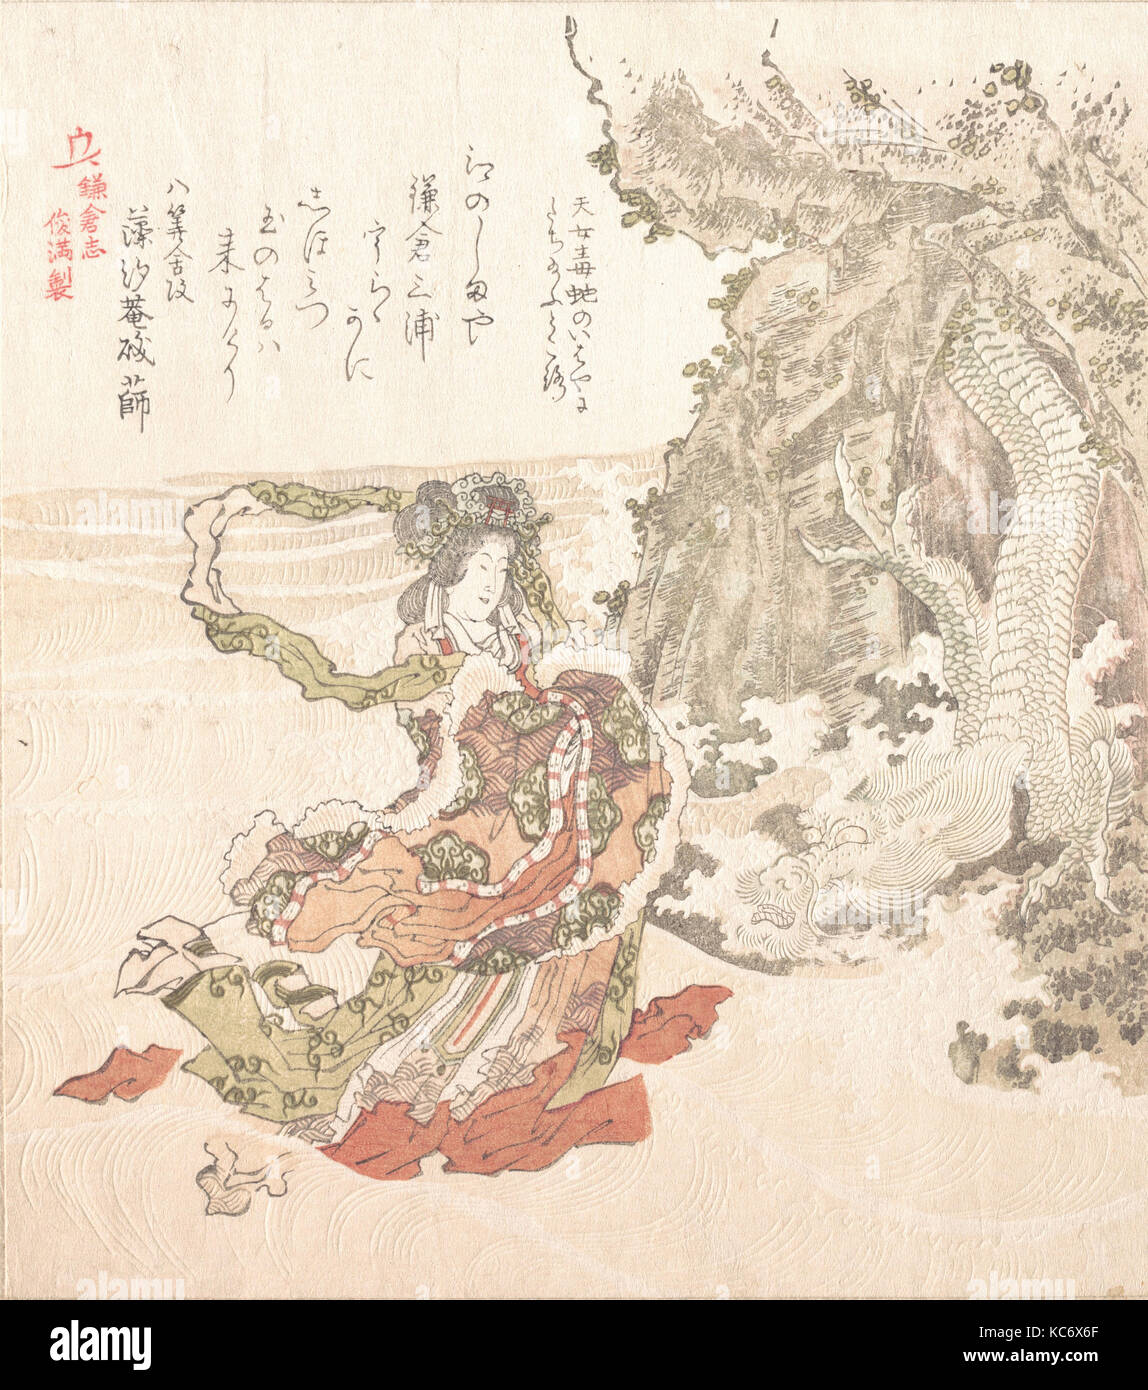 Historia de Kamakura, del período Edo (1615-1868), del siglo XIX, Japón, grabado en madera policromada (surimono); tinta y color sobre papel Foto de stock